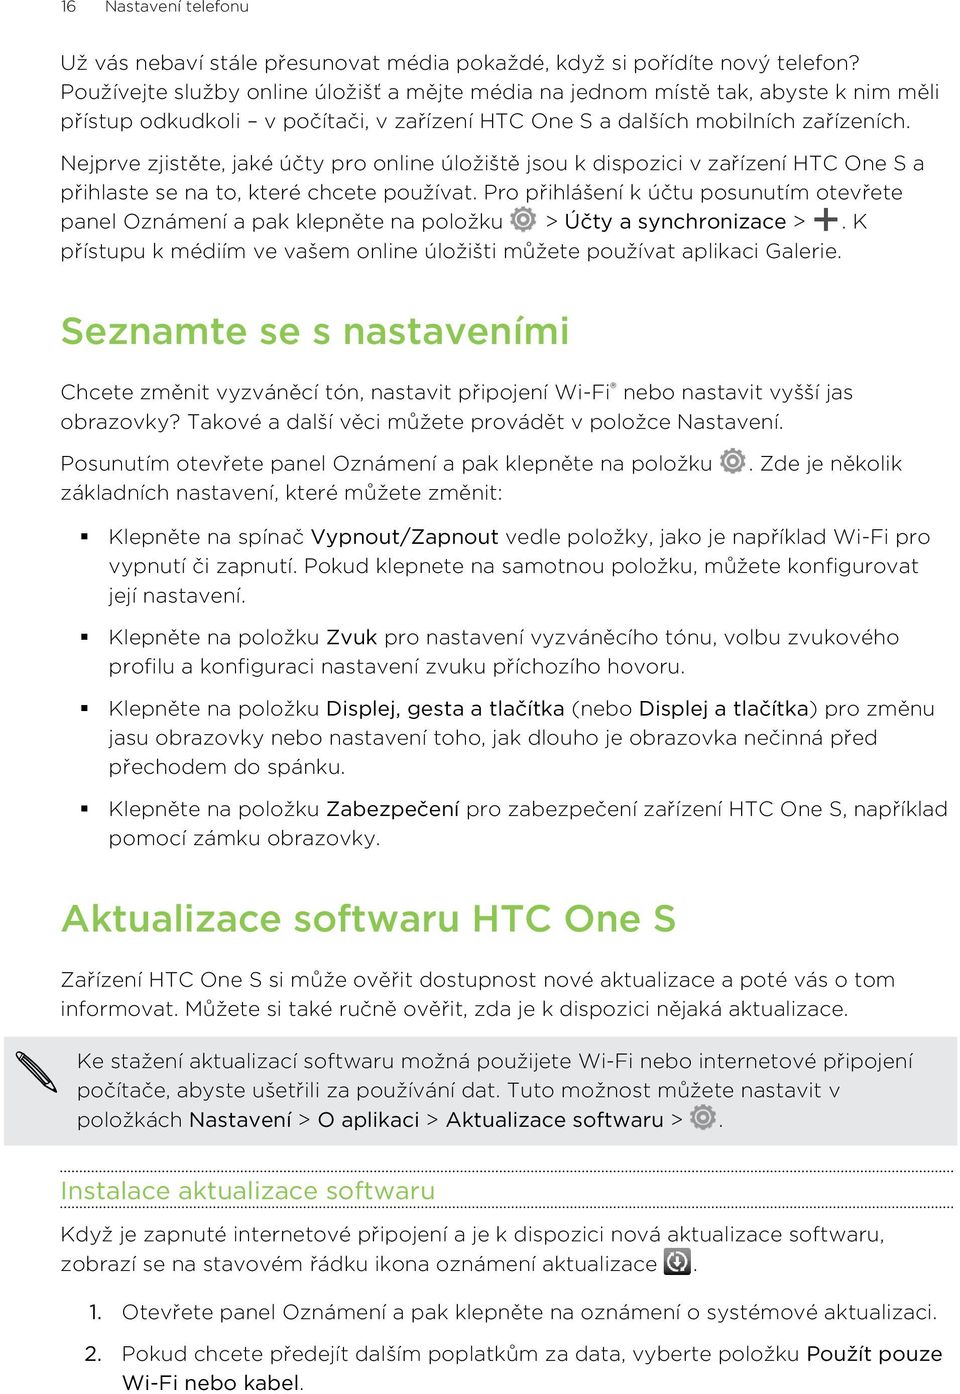 Nejprve zjistěte, jaké účty pro online úložiště jsou k dispozici v zařízení HTC One S a přihlaste se na to, které chcete používat.